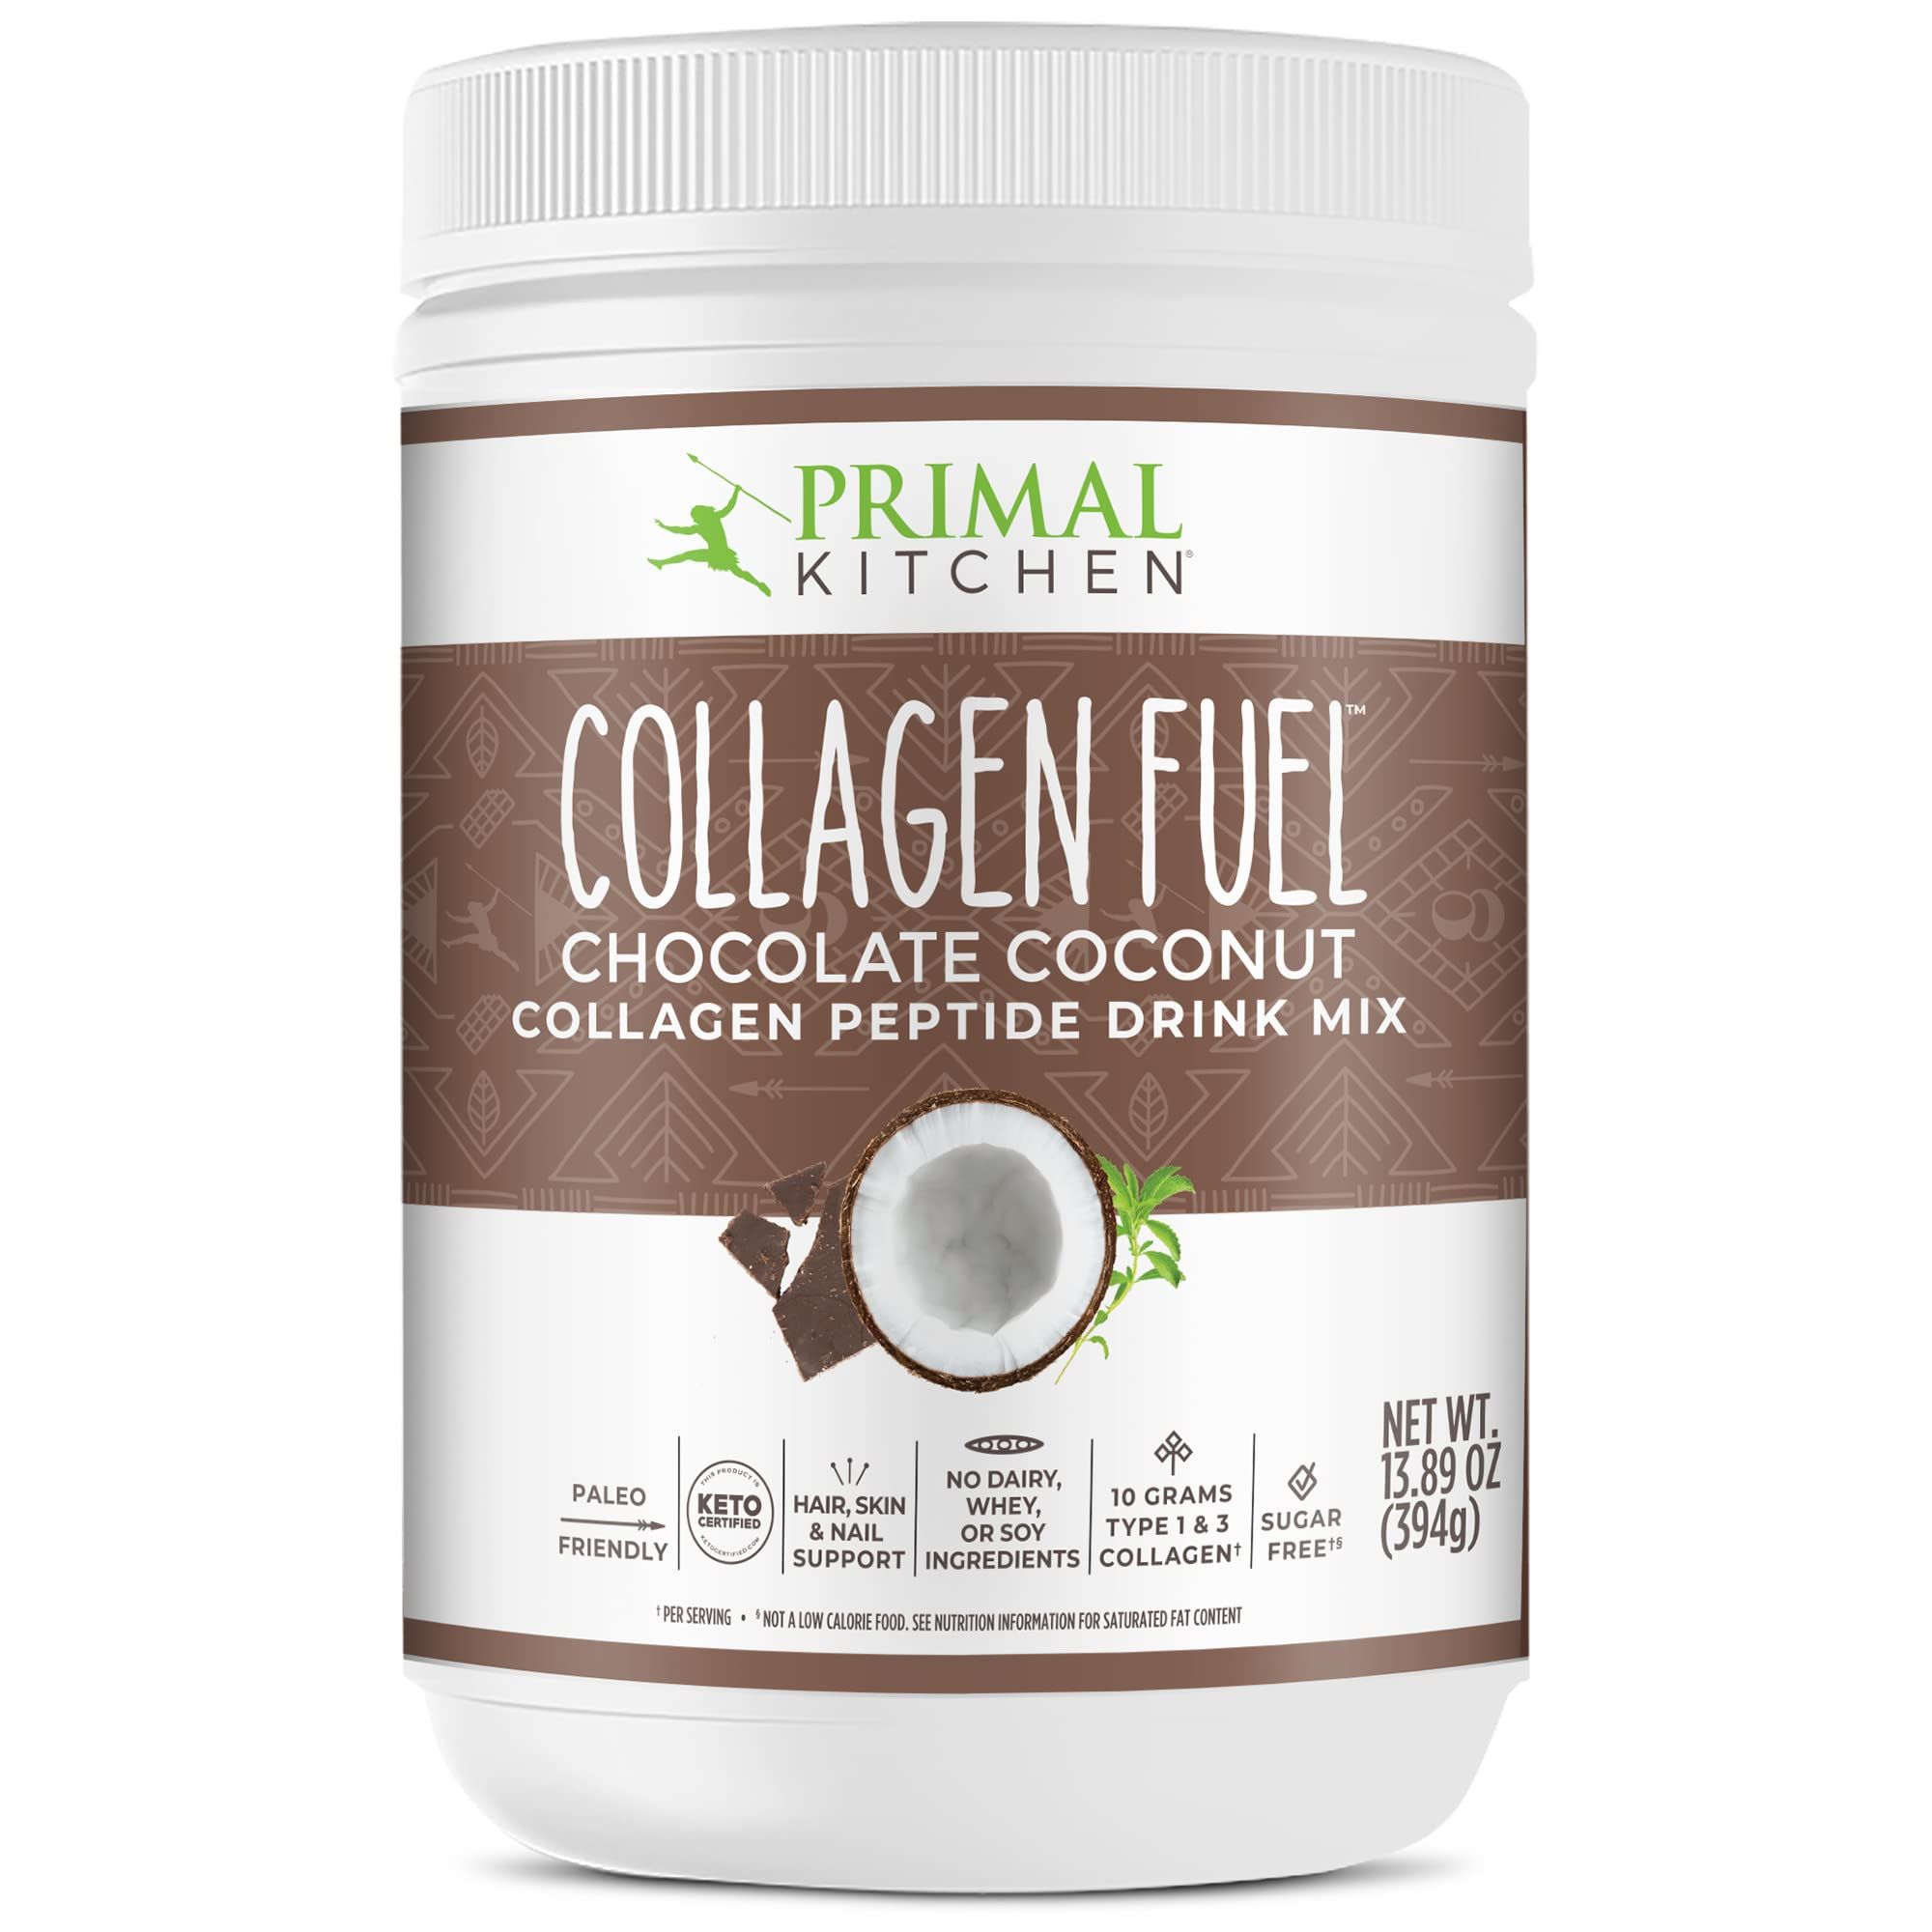 Primal Kitchen Collagen Fuel Collagen Peptide Drink Mix, Chocolate Coconut, No Dairy Coffee Cream... | Amazon (US)